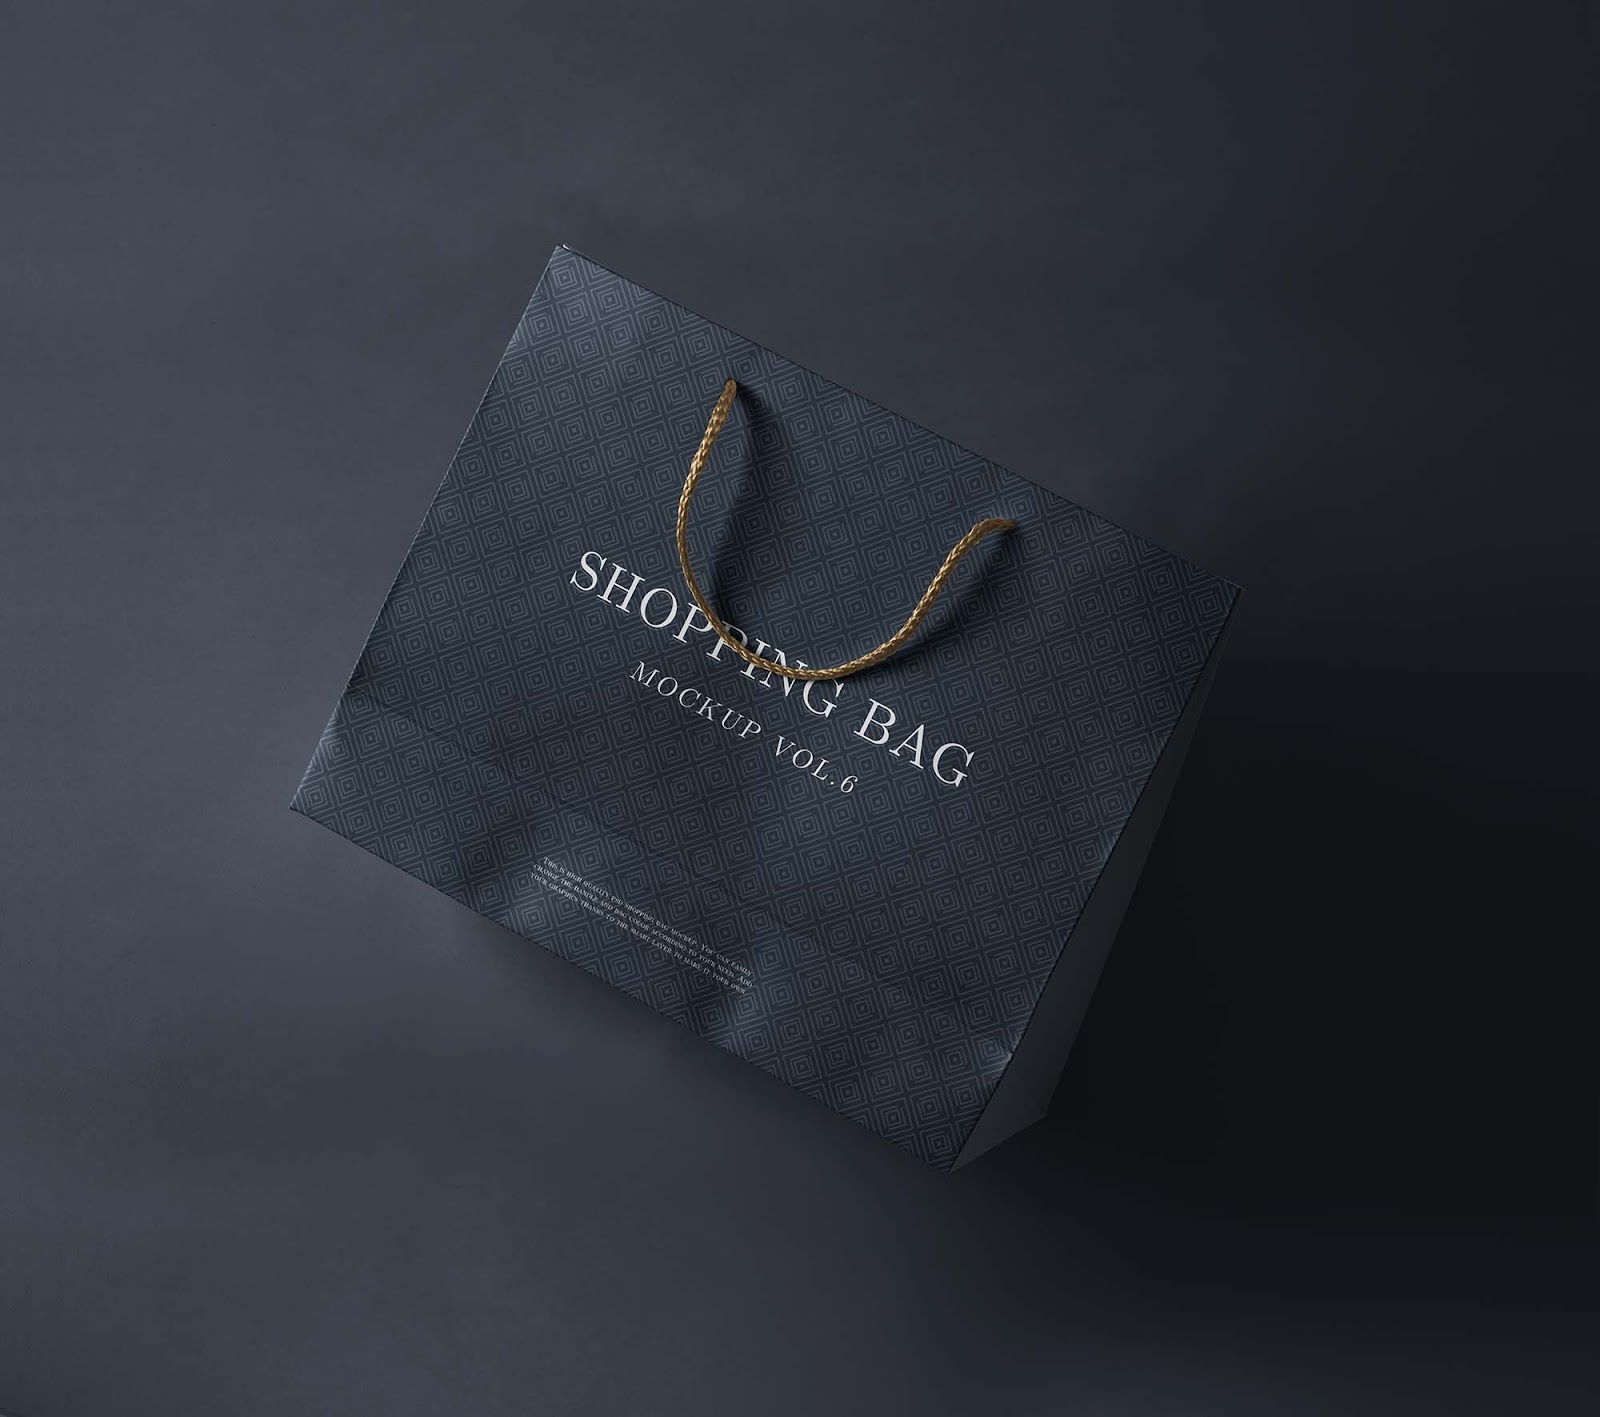 Download 1645+ Bag Shop Mockup for Branding